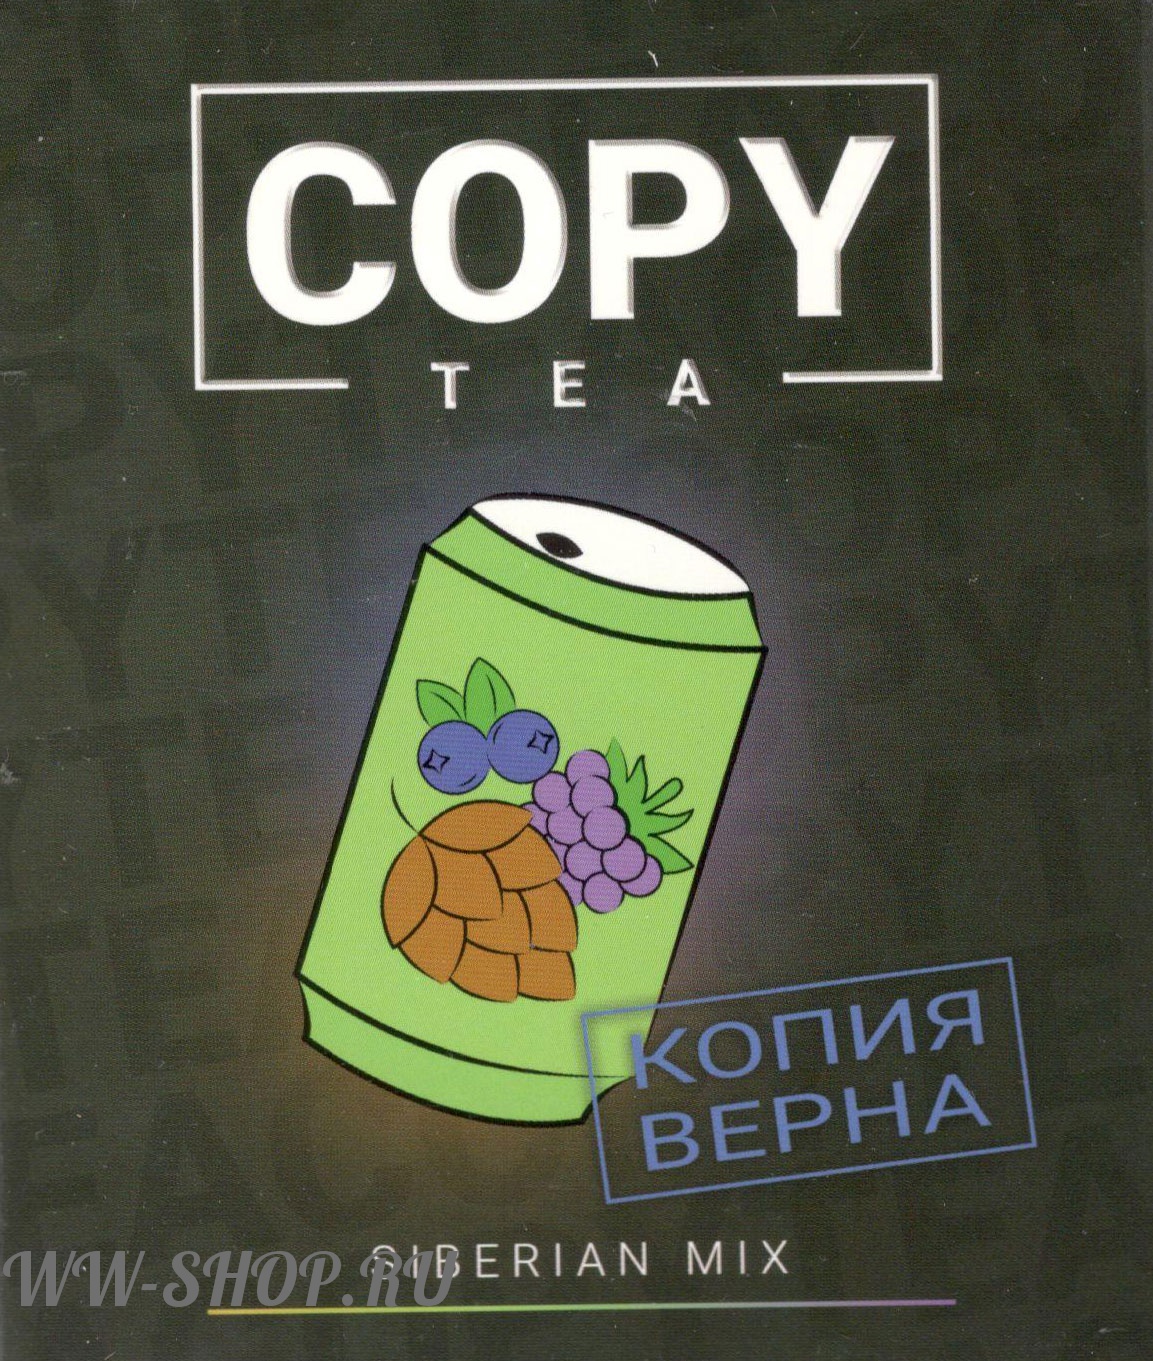 copy - сибирская смесь (siberian mix) Нижневартовск